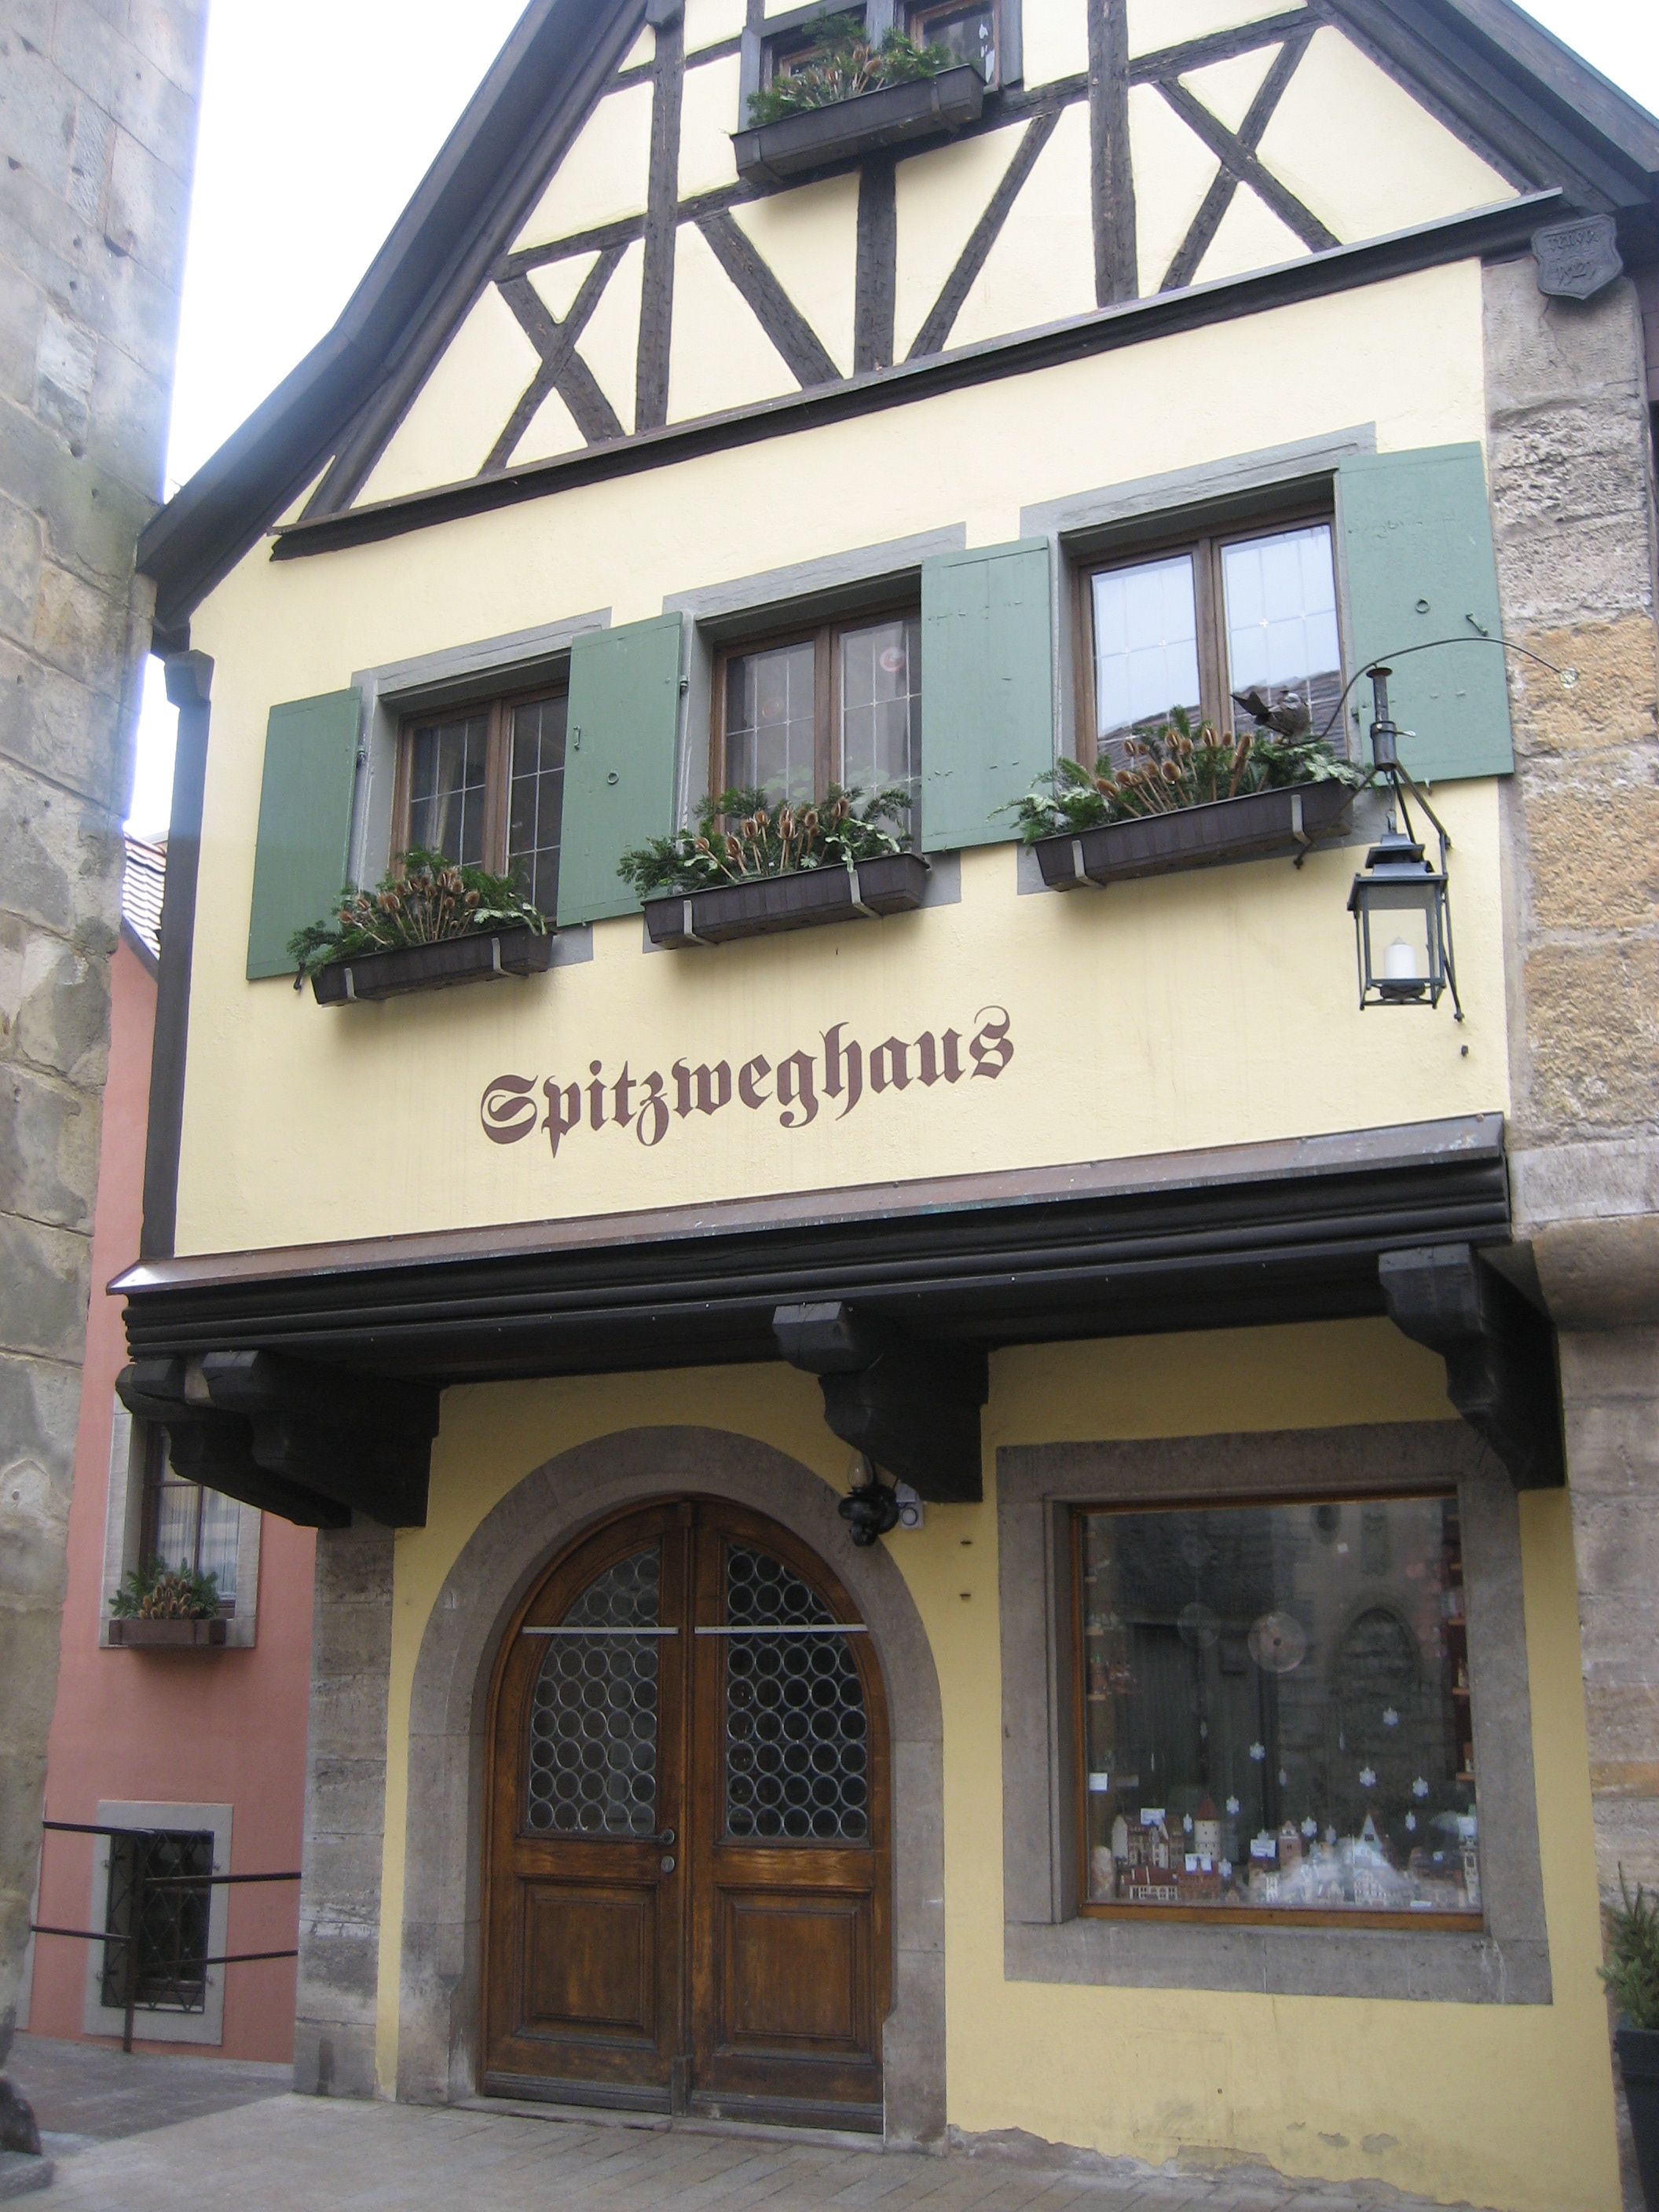 Rothenburg ober der Tauber, Germany - store front | Deutschland ...